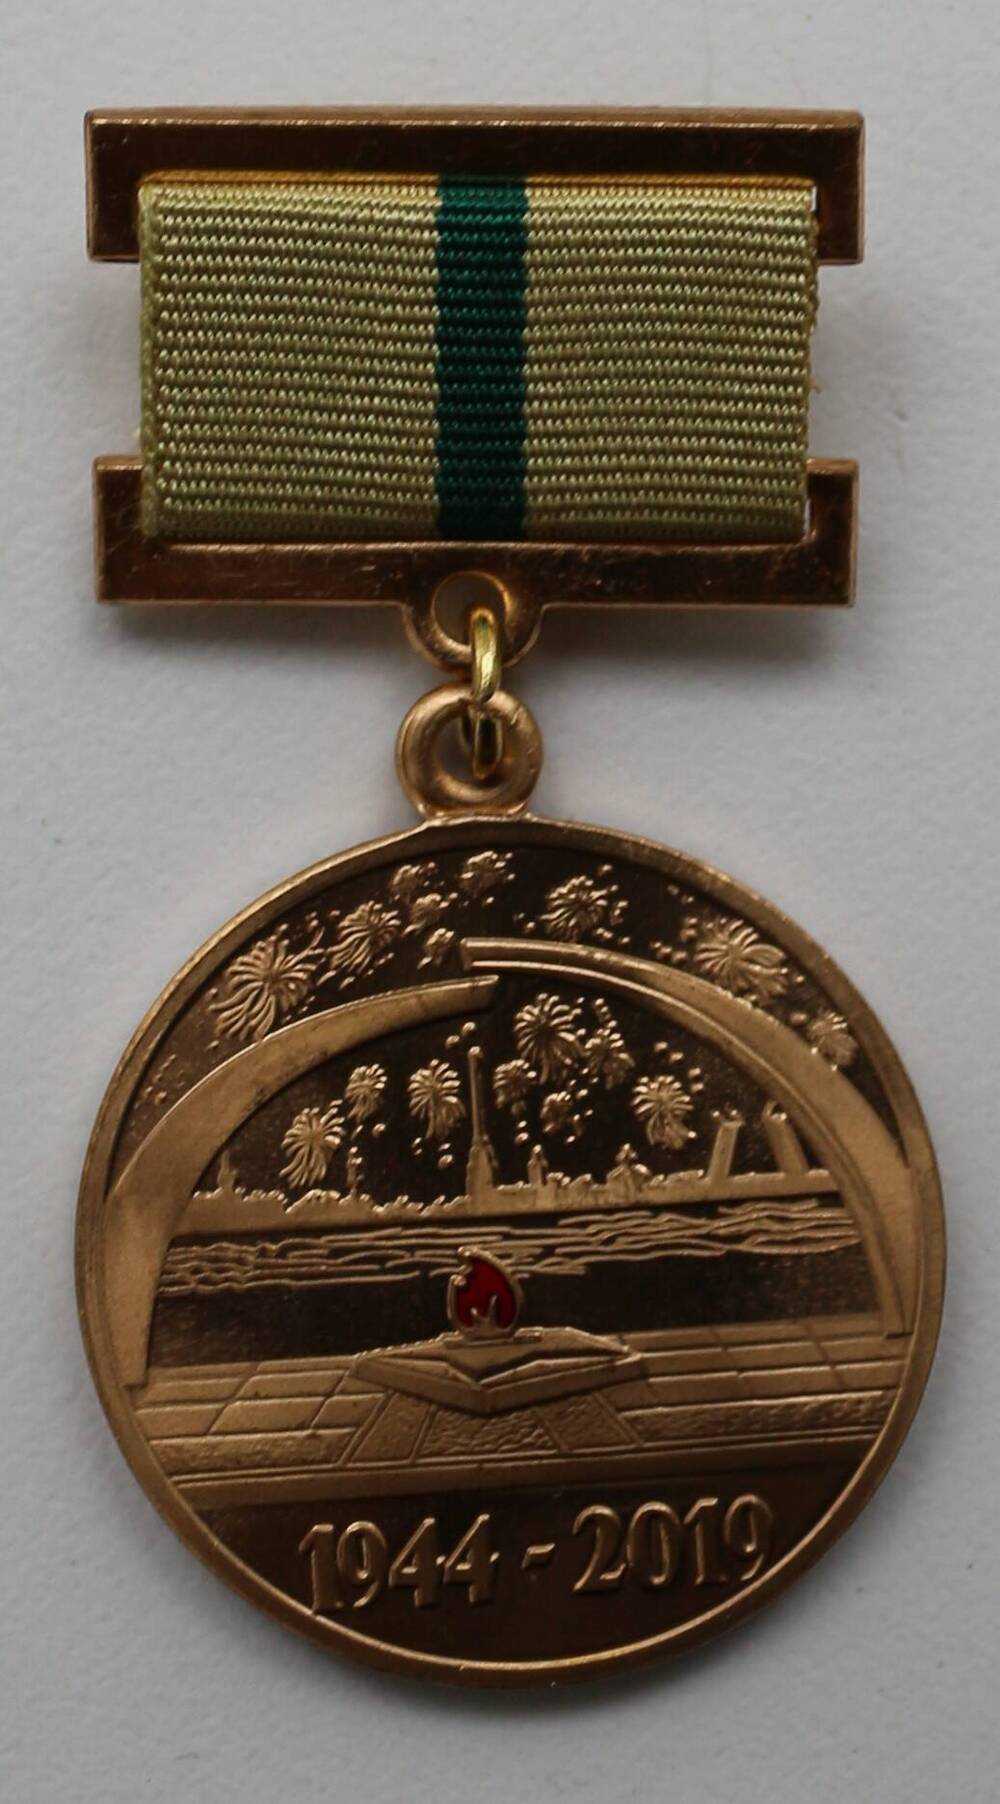 Медаль «В честь 75-летия полного освобождения Ленинграда от фашистской блокады» выпущена из желтого металла